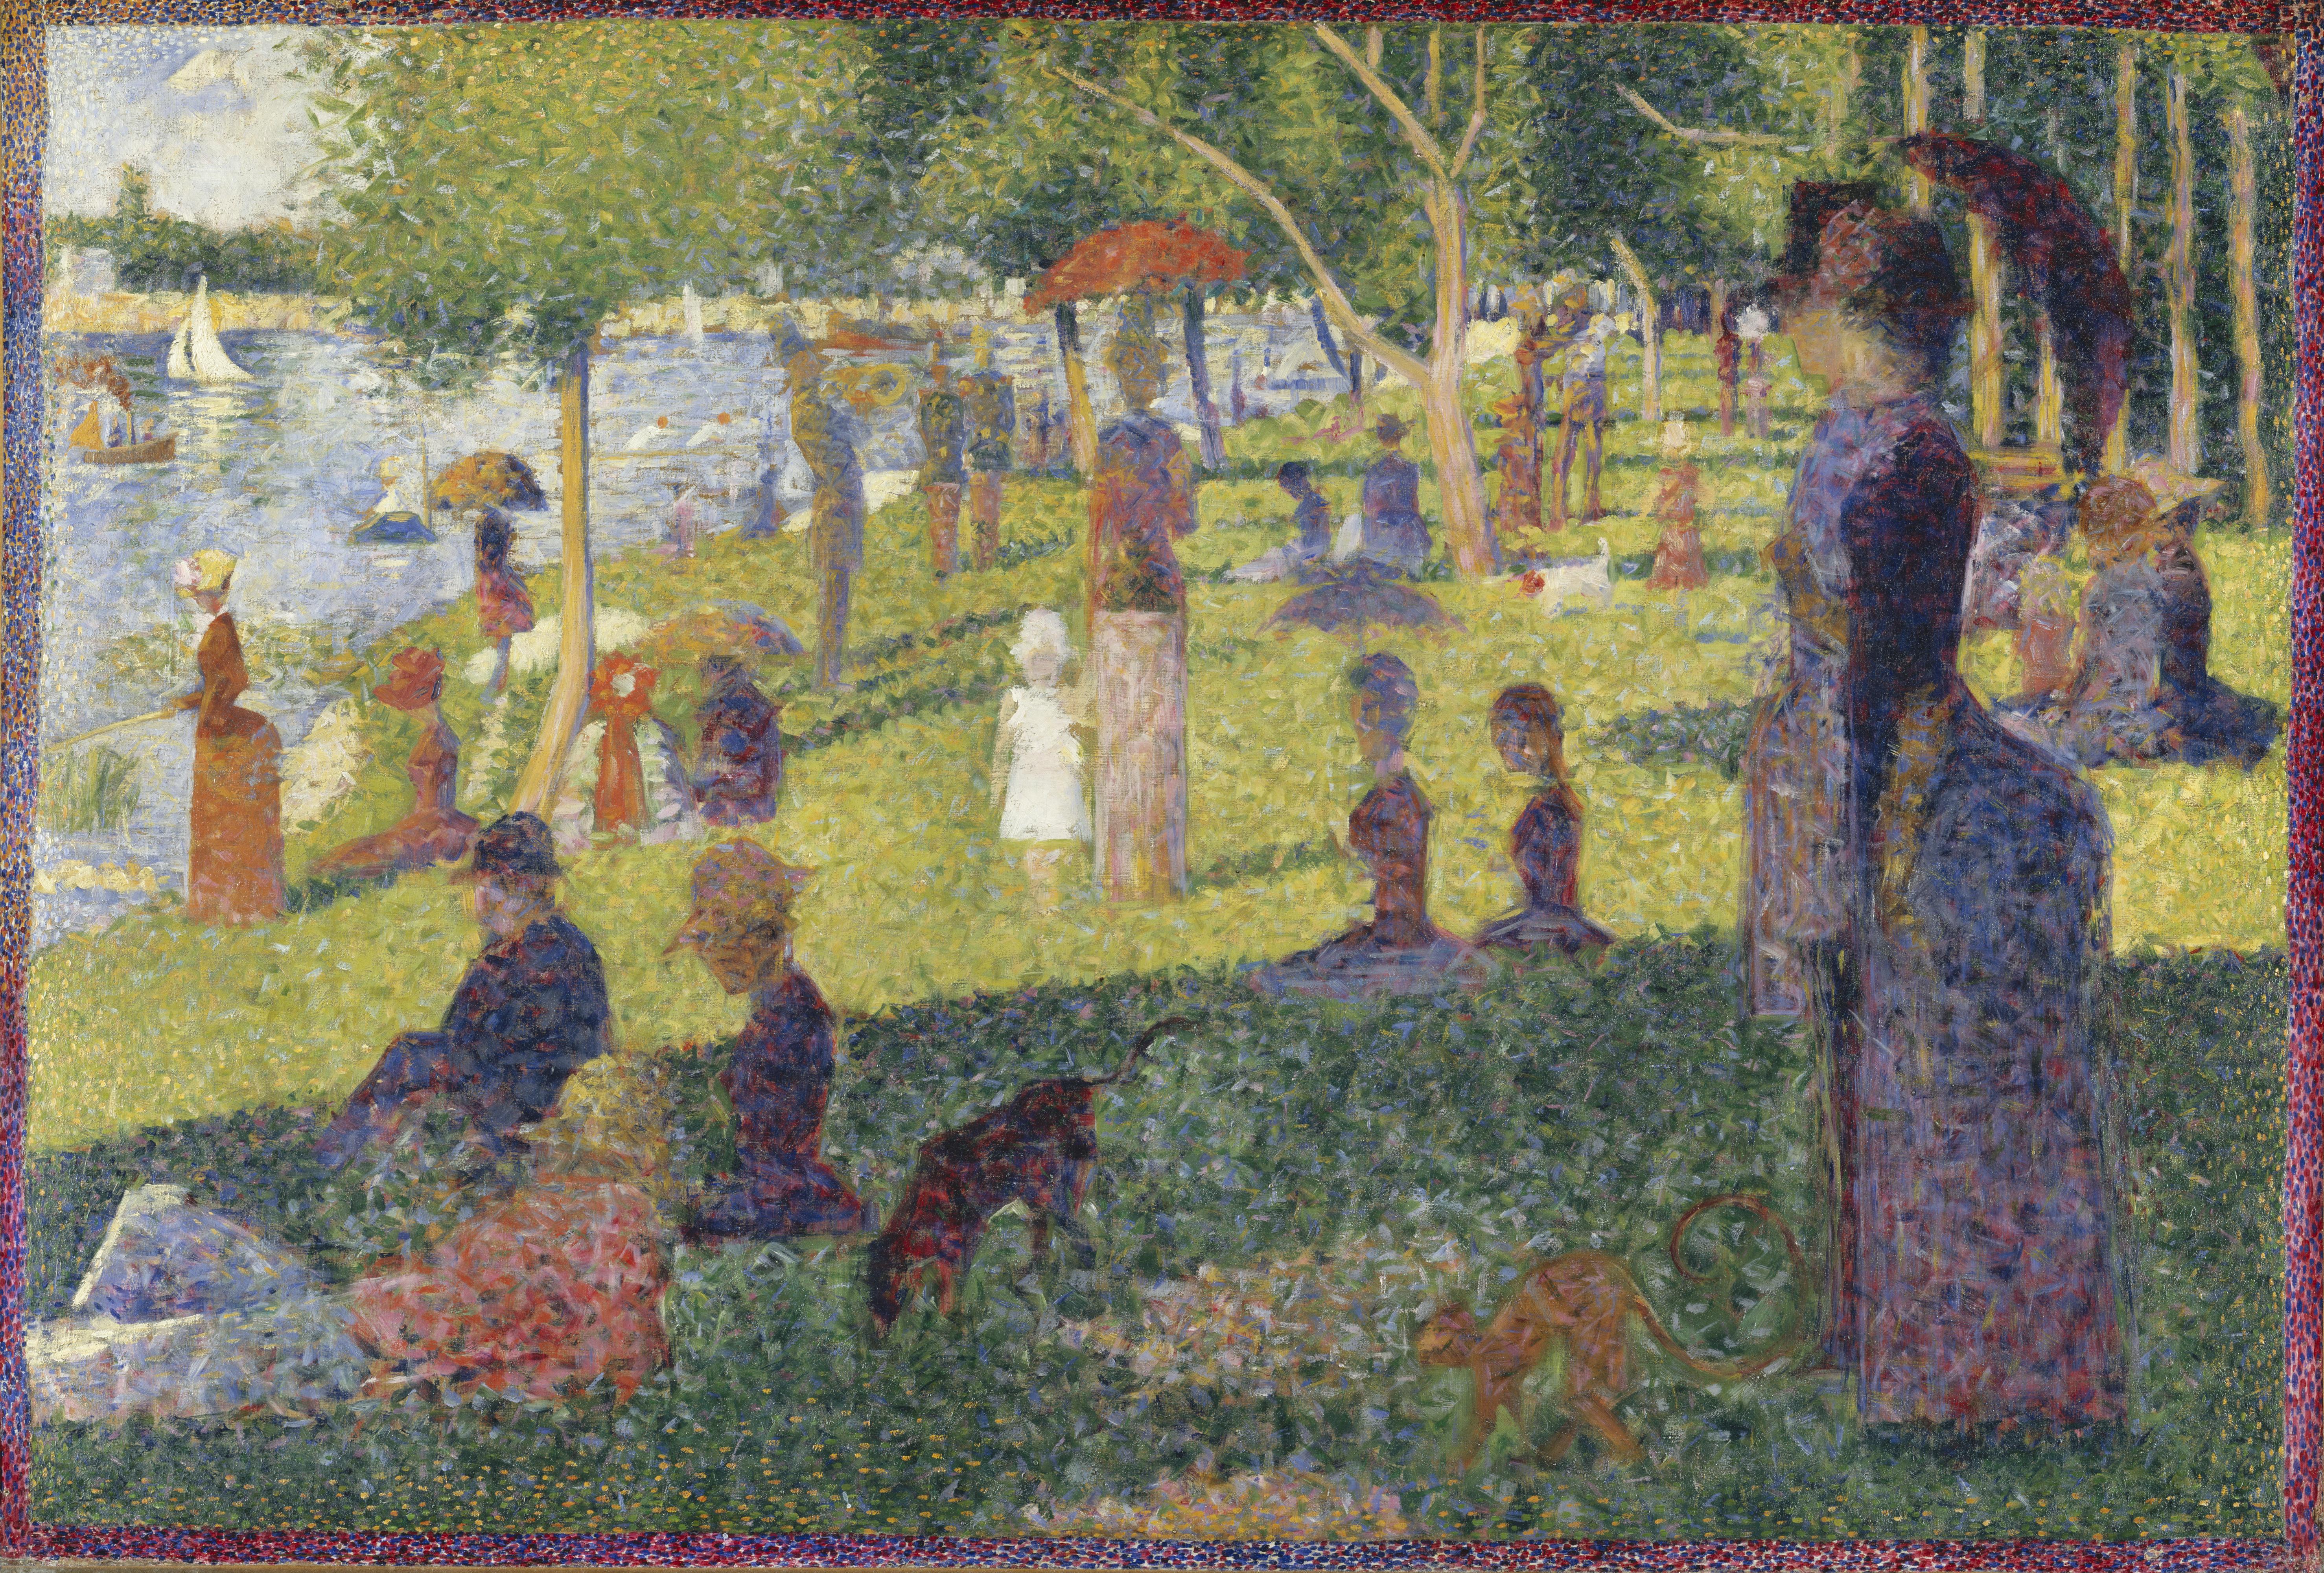 Étude d’un dimanche après-midi à l’île de la Grande Jatte by Georges Seurat - 1884 collection privée